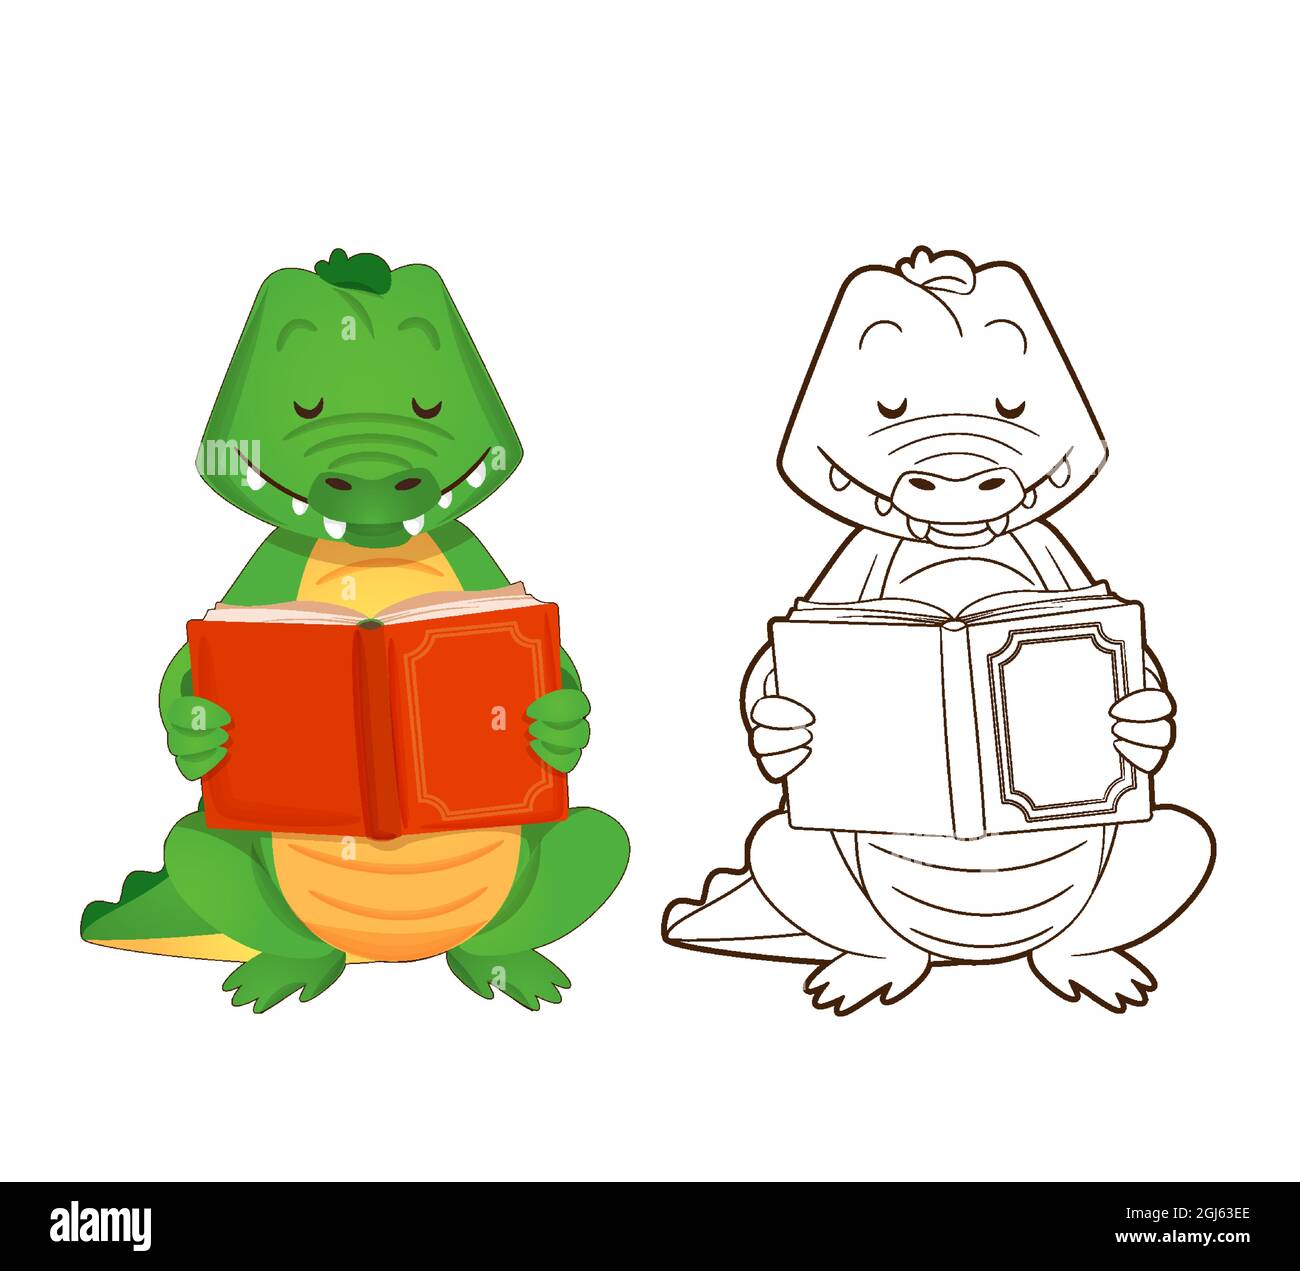 Livre de coloriage, le crocodile vert mignon est en train de lire un livre. Illustration vectorielle de style dessin animé, dessin de contour Illustration de Vecteur